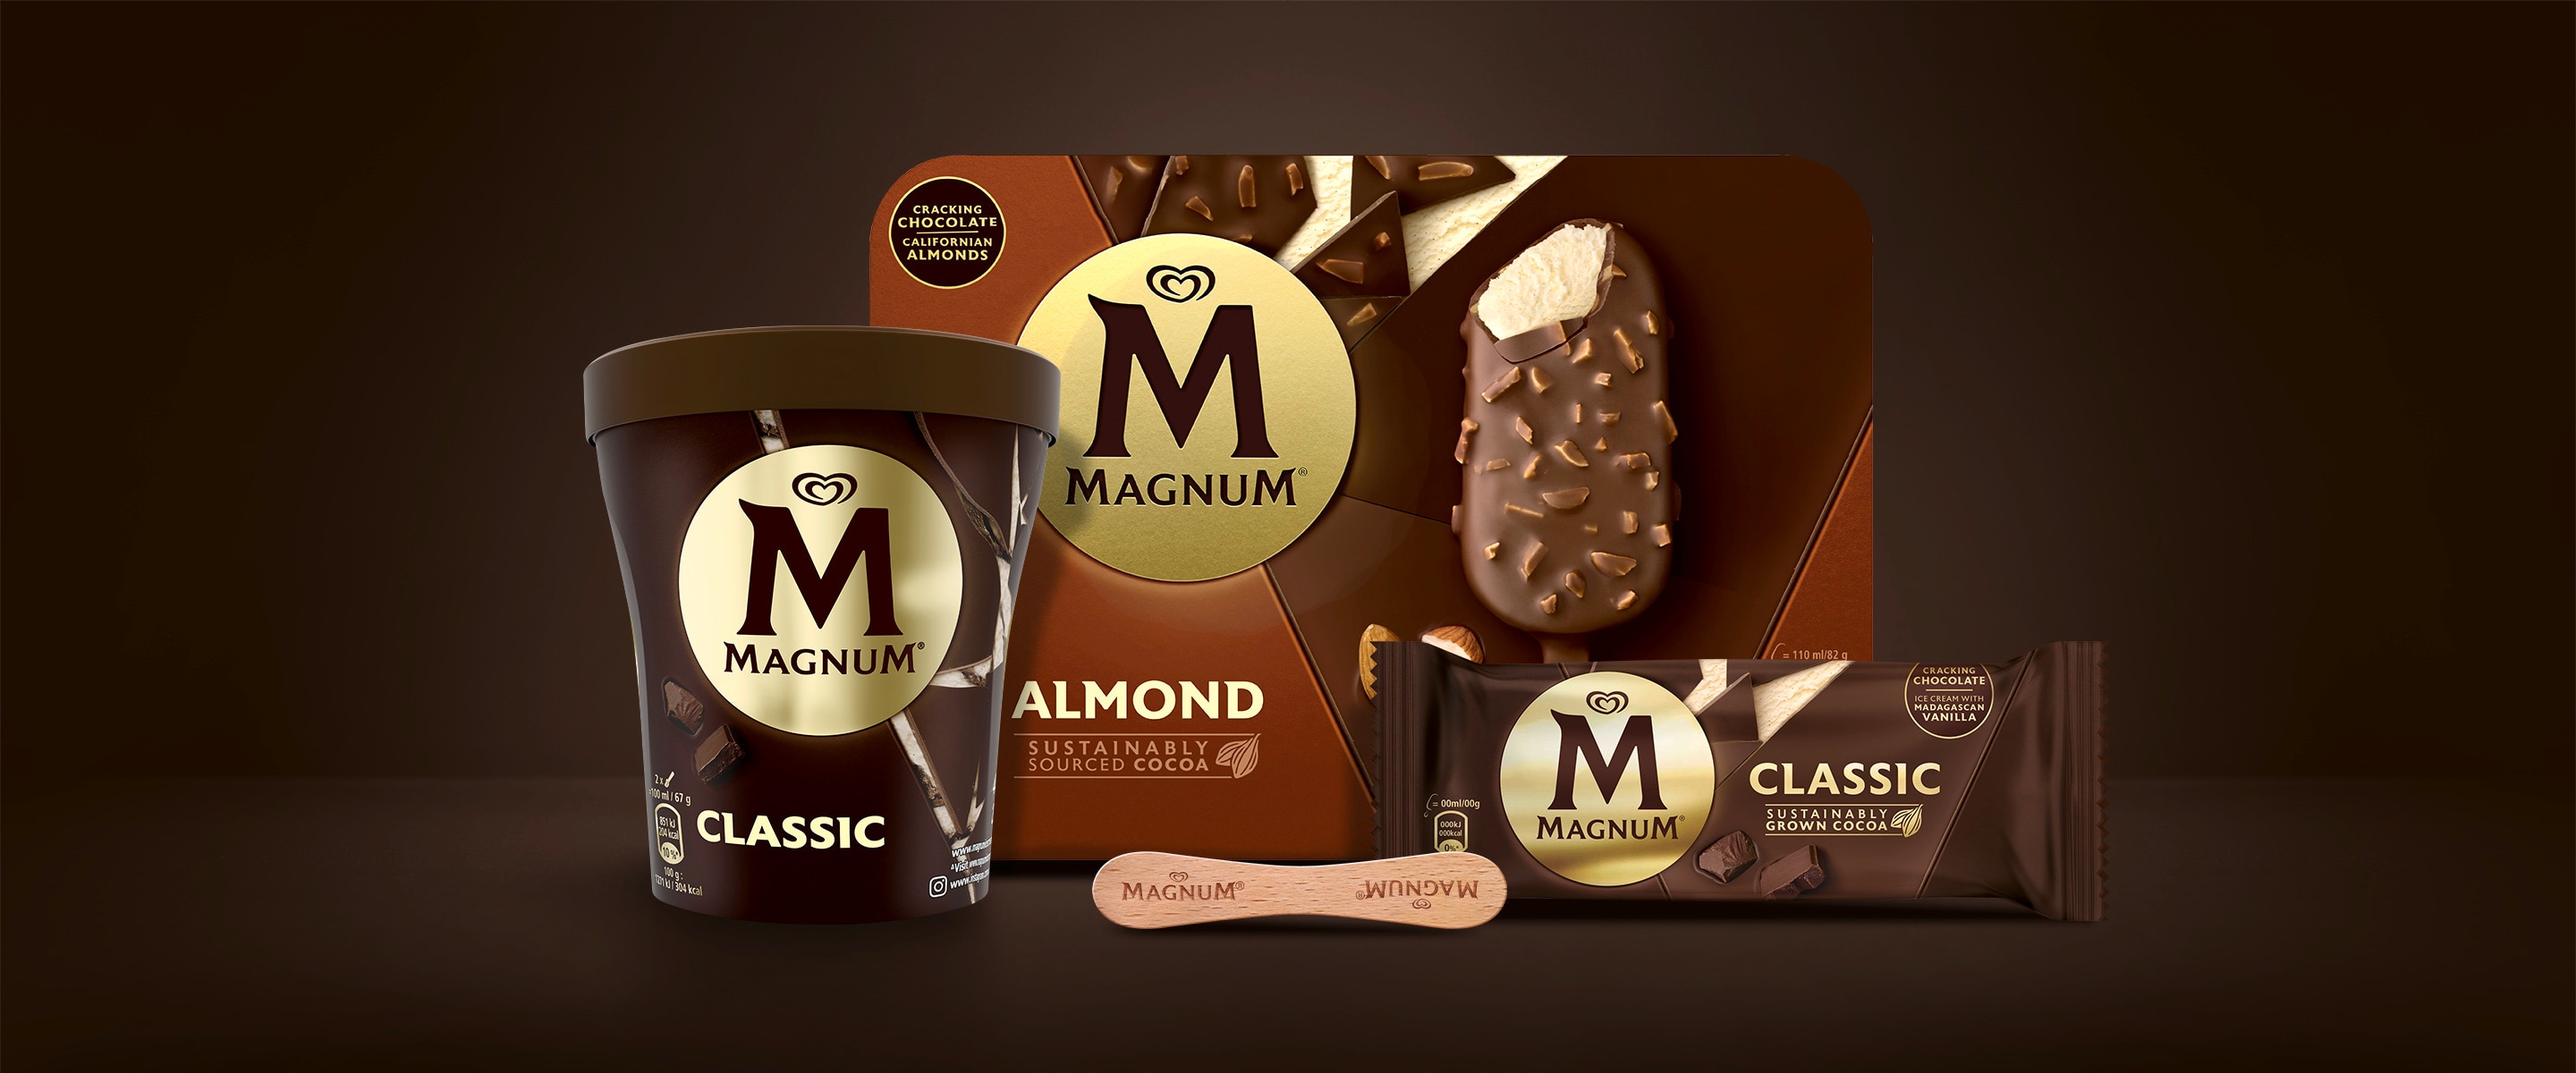 Composizione di Magnum Classic Tub,  Magnum Almond Multipack, Magnum  Classic single pack e stick di legno  Magnum su sfondo marrone.